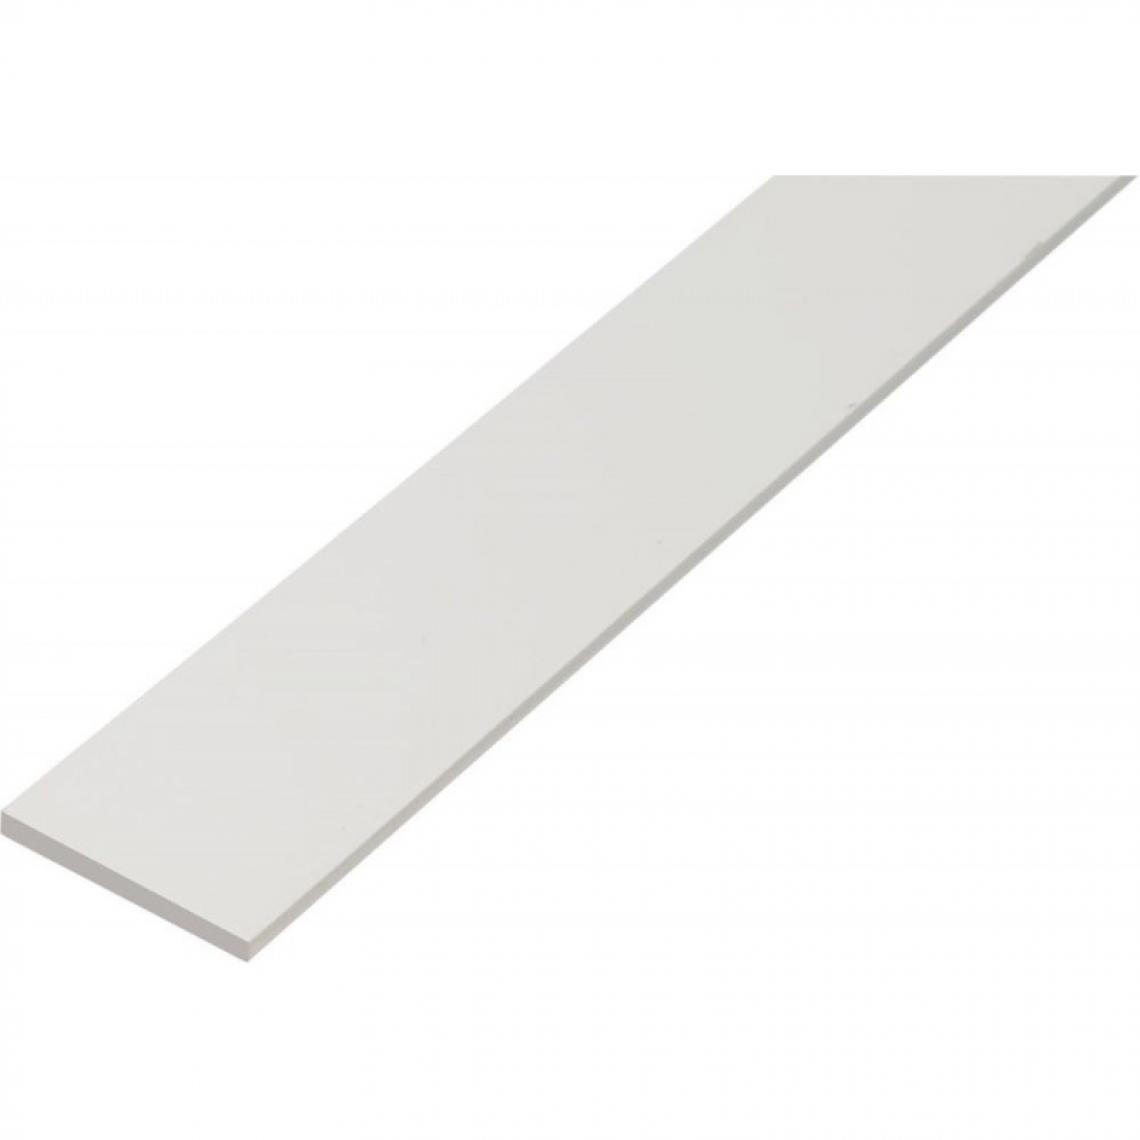 Gah Alberts - Profil Plastique,blanc,20x2/1m - Profilé de finition pour carrelage